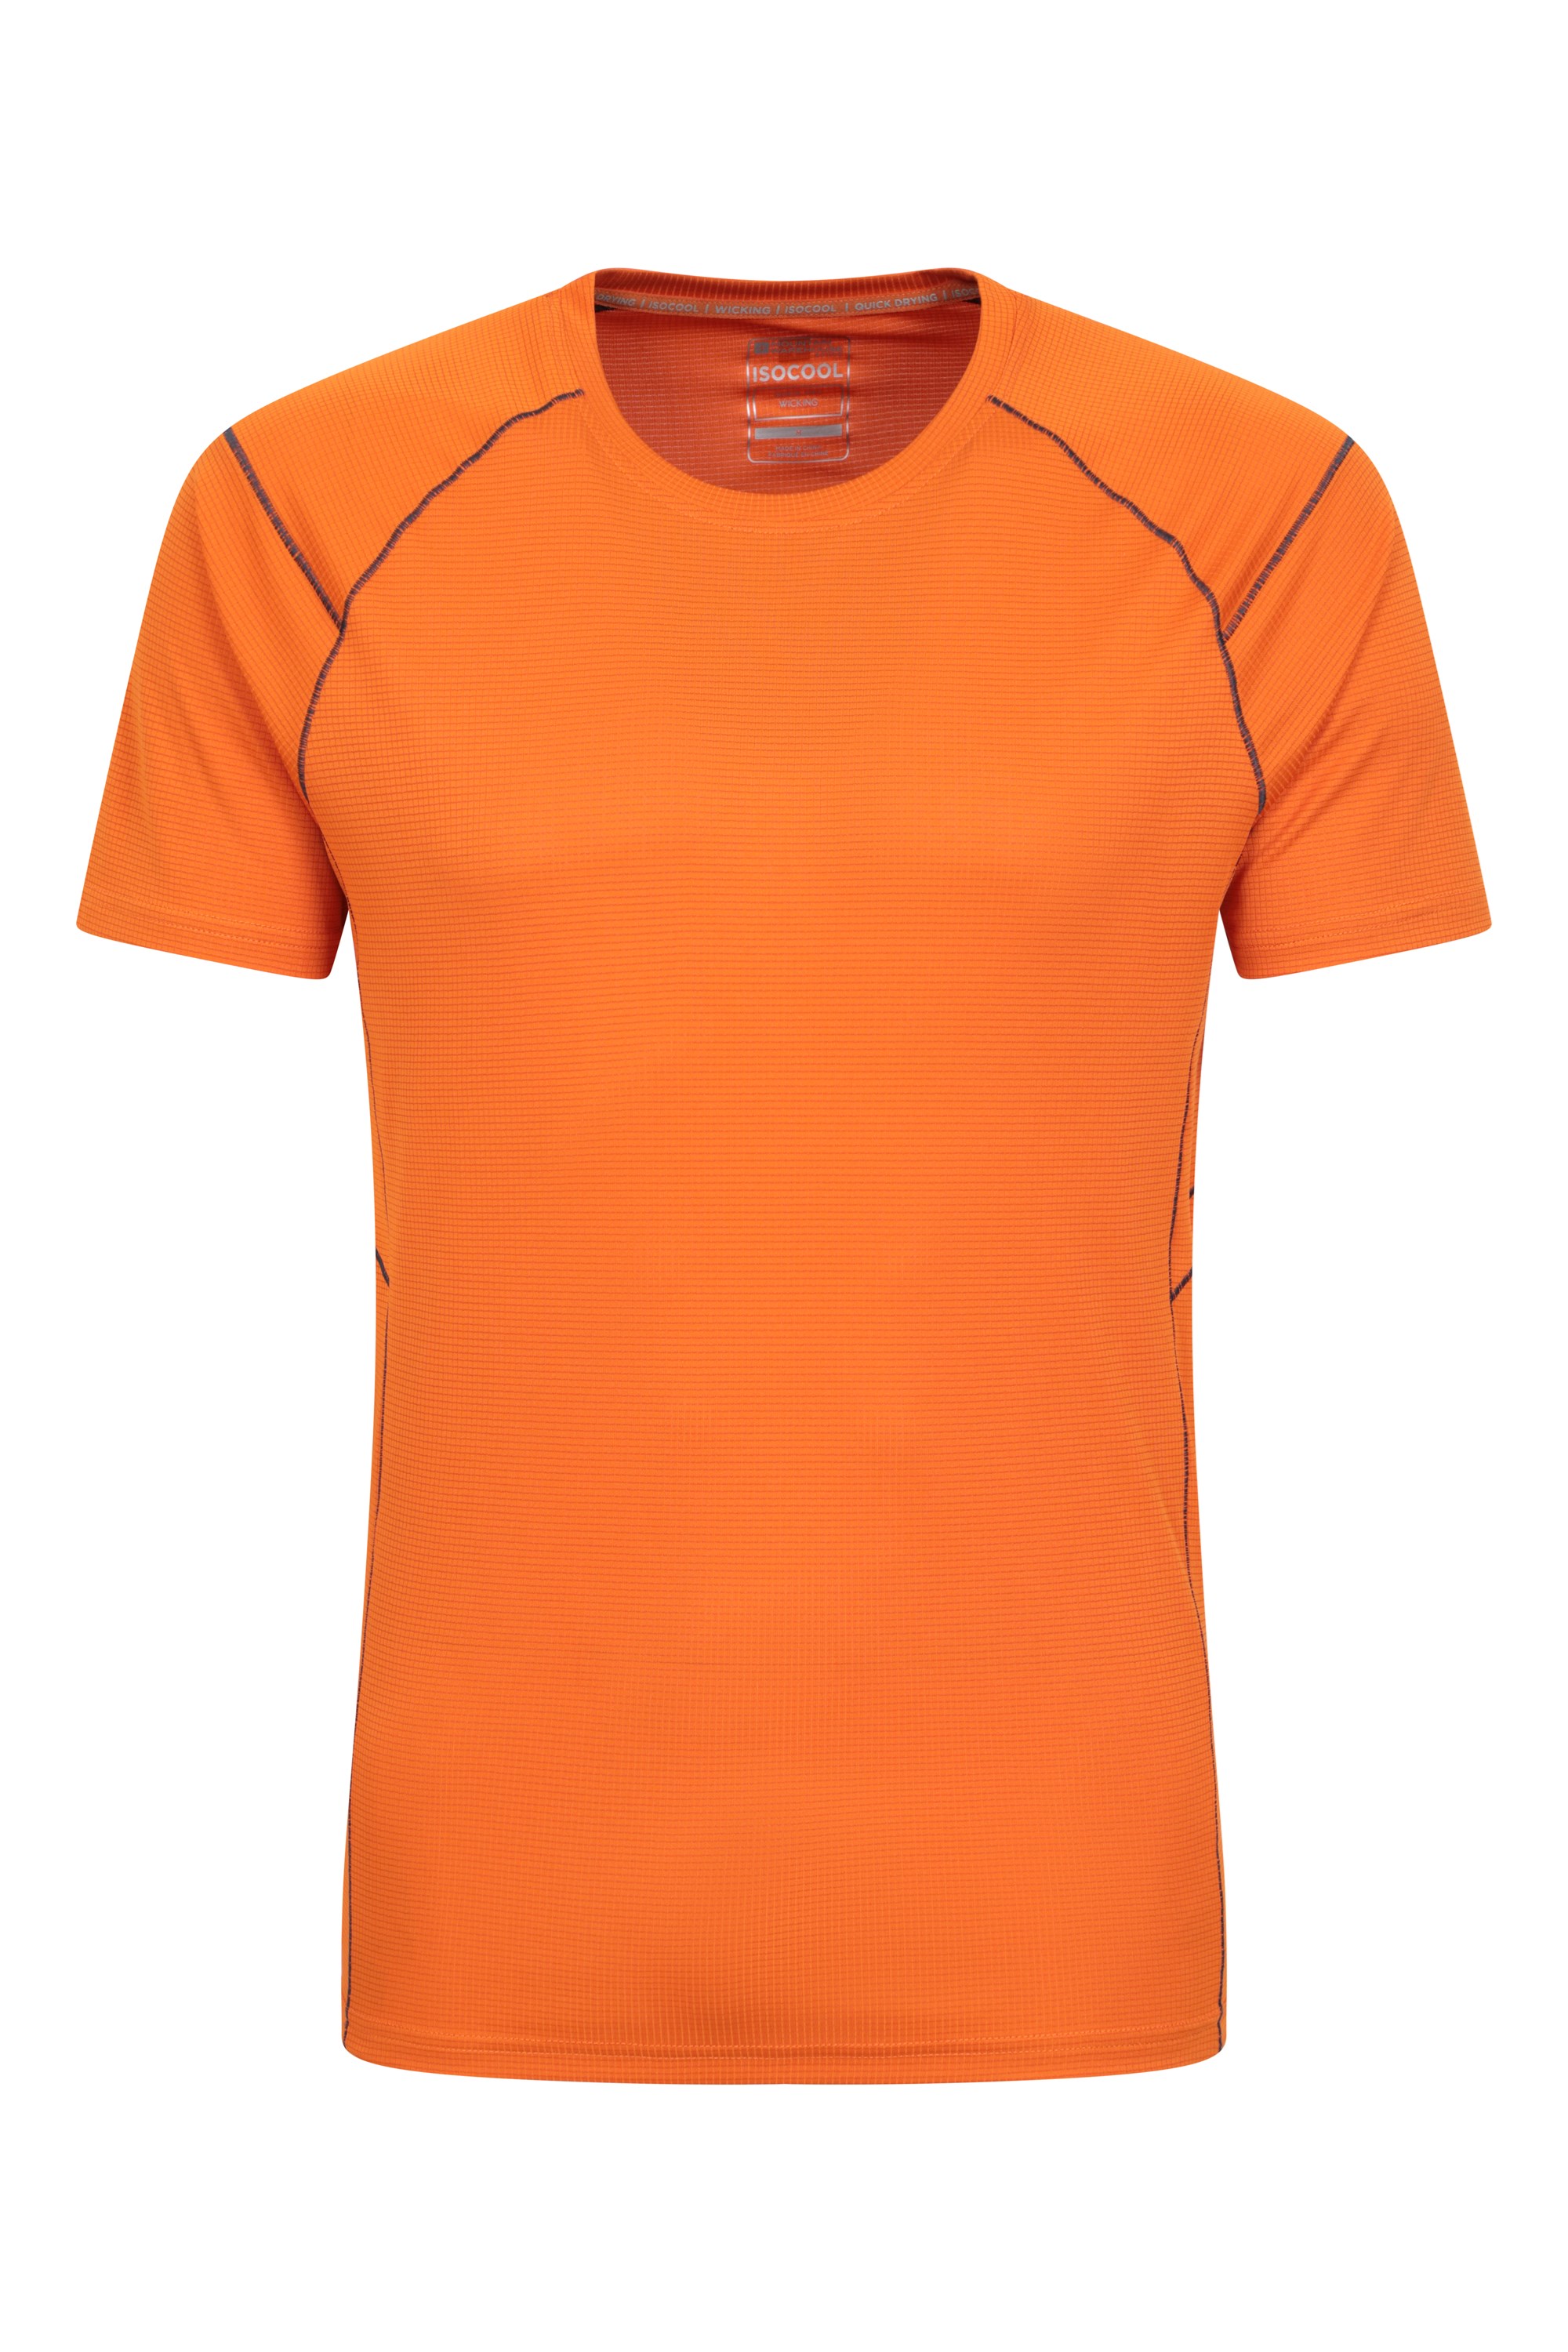 Approach Mens Lightweight Hiking T-Shirt - Orange